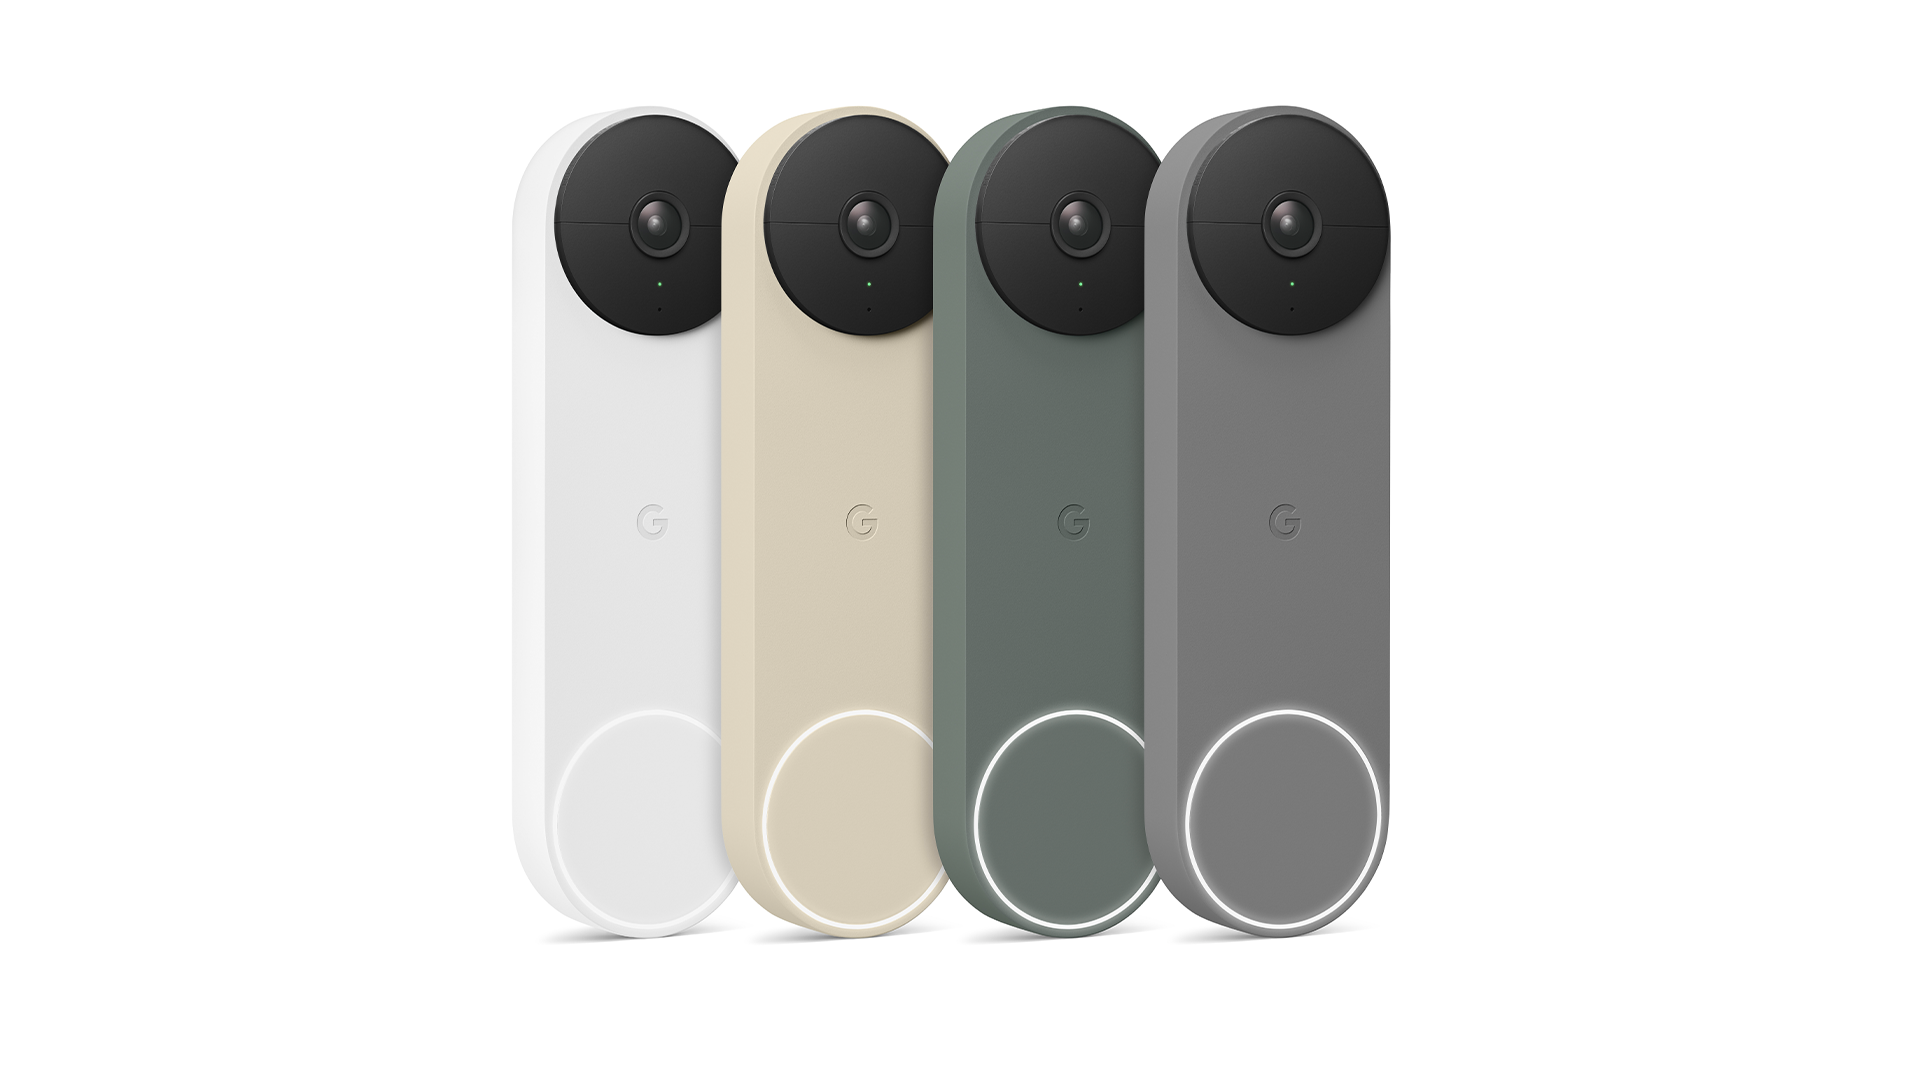 Bel pintu Google Nest hadir dalam empat warna.